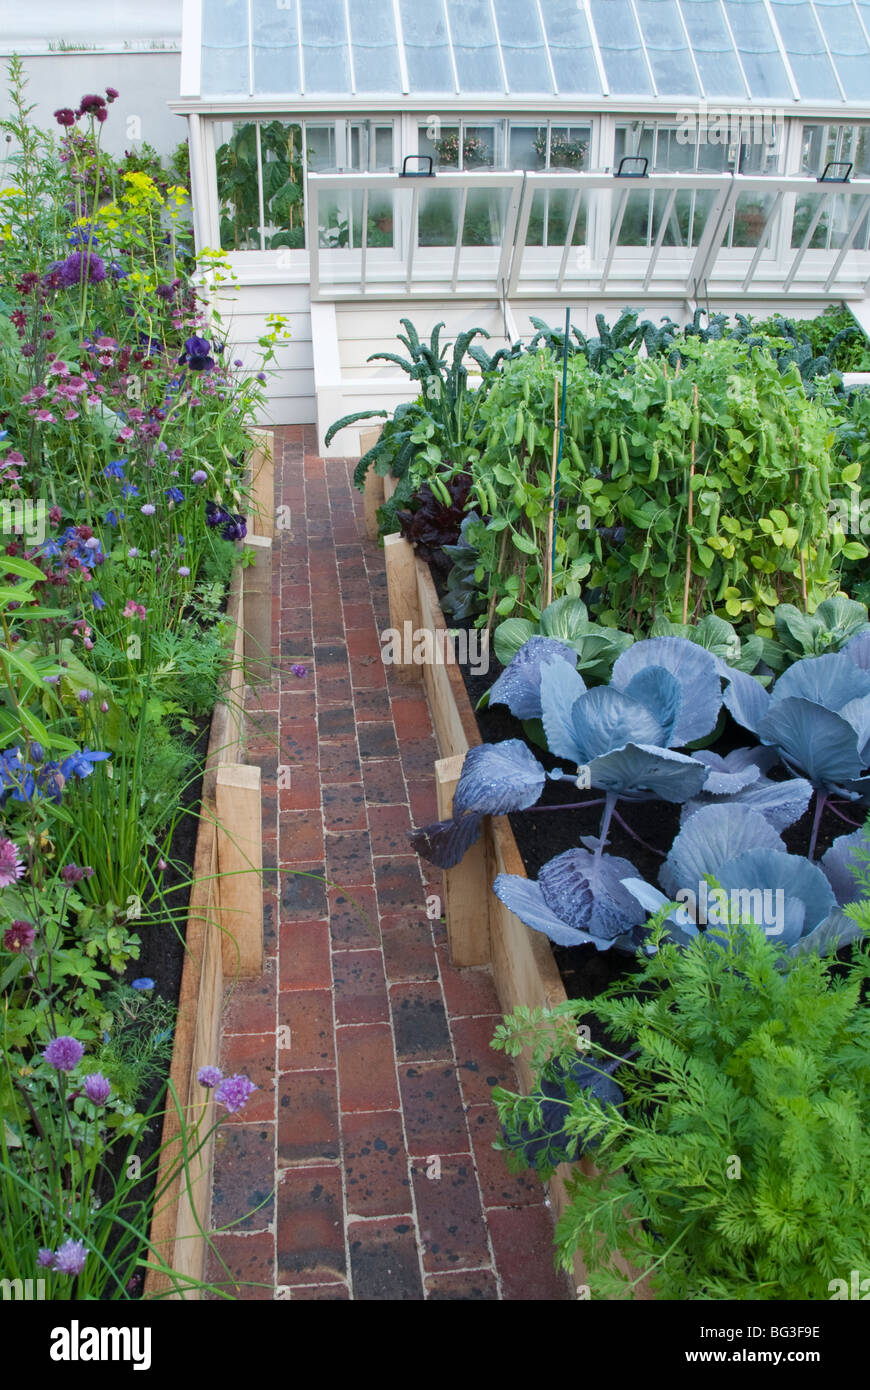 Bellissimo giardino vegetale con letti in rilievo, percorso di mattoni, moderna e ricercata e serra giardino di fiori nel cortile del giardinaggio Foto Stock